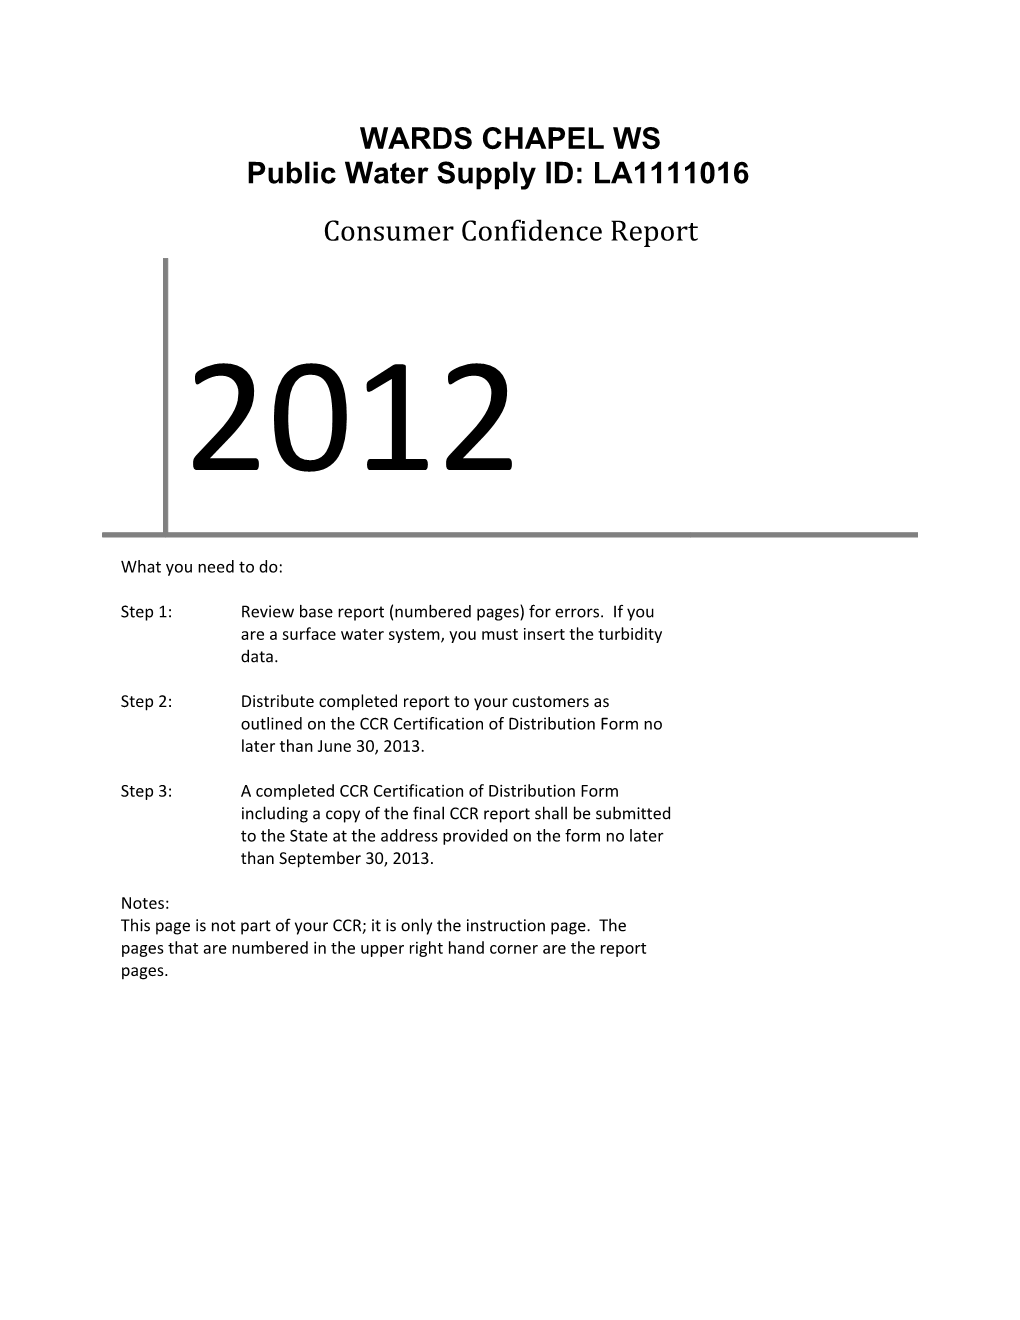 Public Water Supply ID: LA1111016